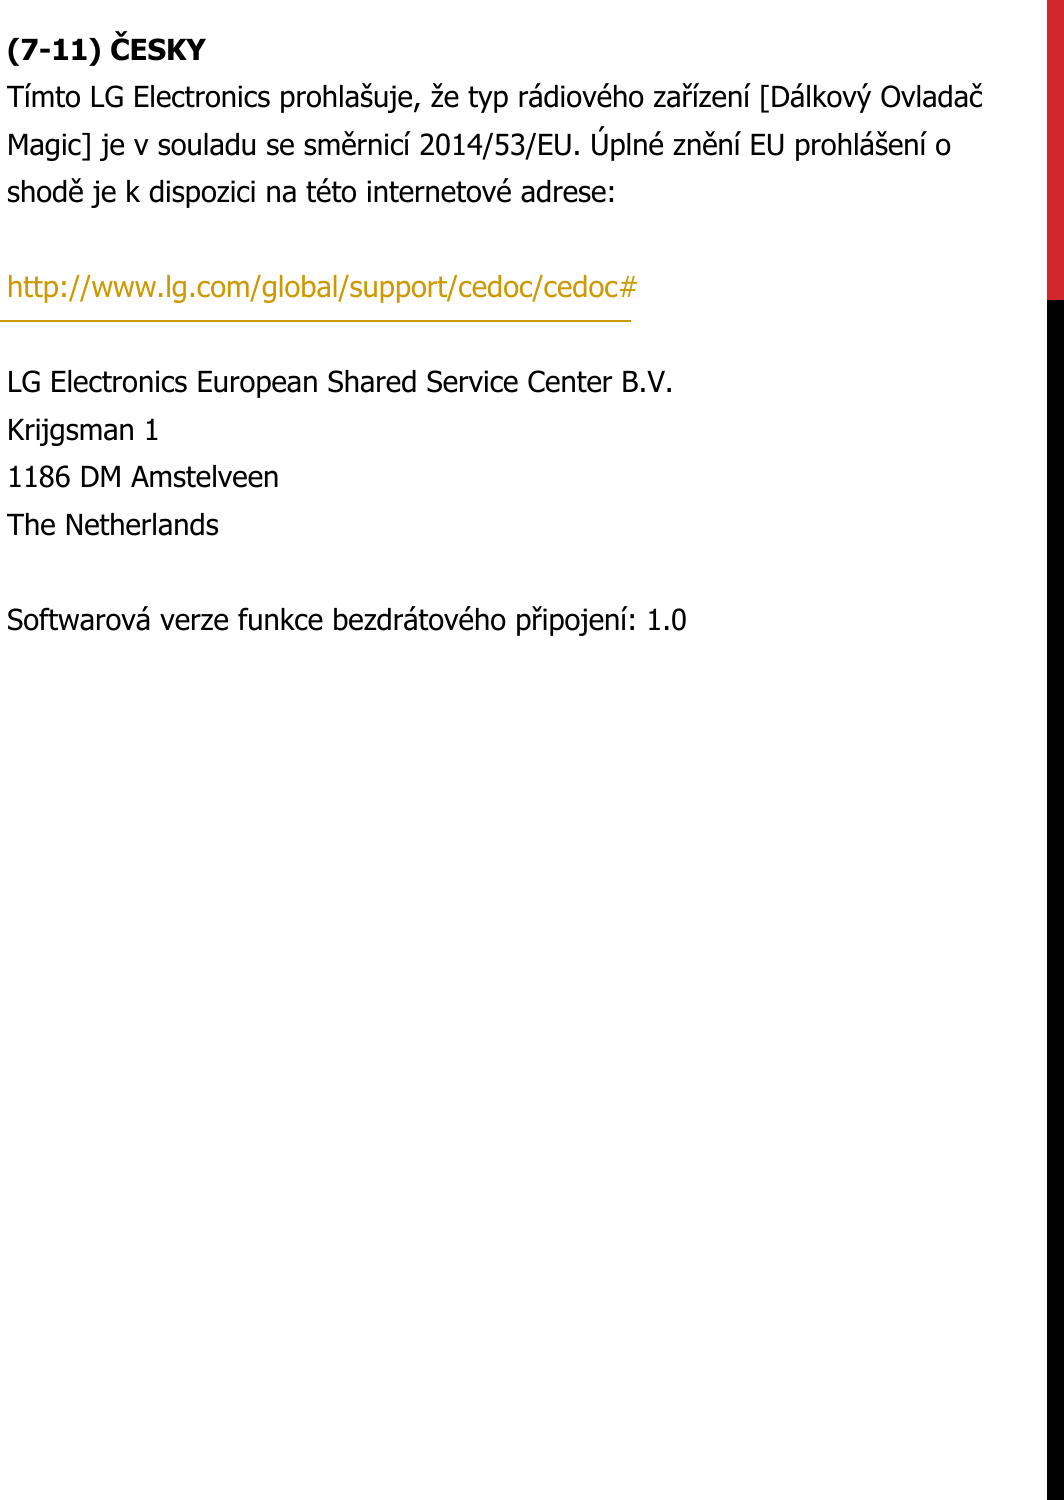 (7-11) ČESKYTímto LG Electronics prohlašuje, že typ rádiového zařízení [Dálkový Ovladač Magic] je v souladu se směrnicí 2014/53/EU. Úplné znění EU prohlášení o shodě je k dispozici na této internetové adrese:   http://www.lg.com/global/support/cedoc/cedoc#   LG Electronics European Shared Service Center B.V.  Krijgsman 1  1186 DM Amstelveen  The Netherlands   Softwarová verze funkce bezdrátového připojení: 1.0